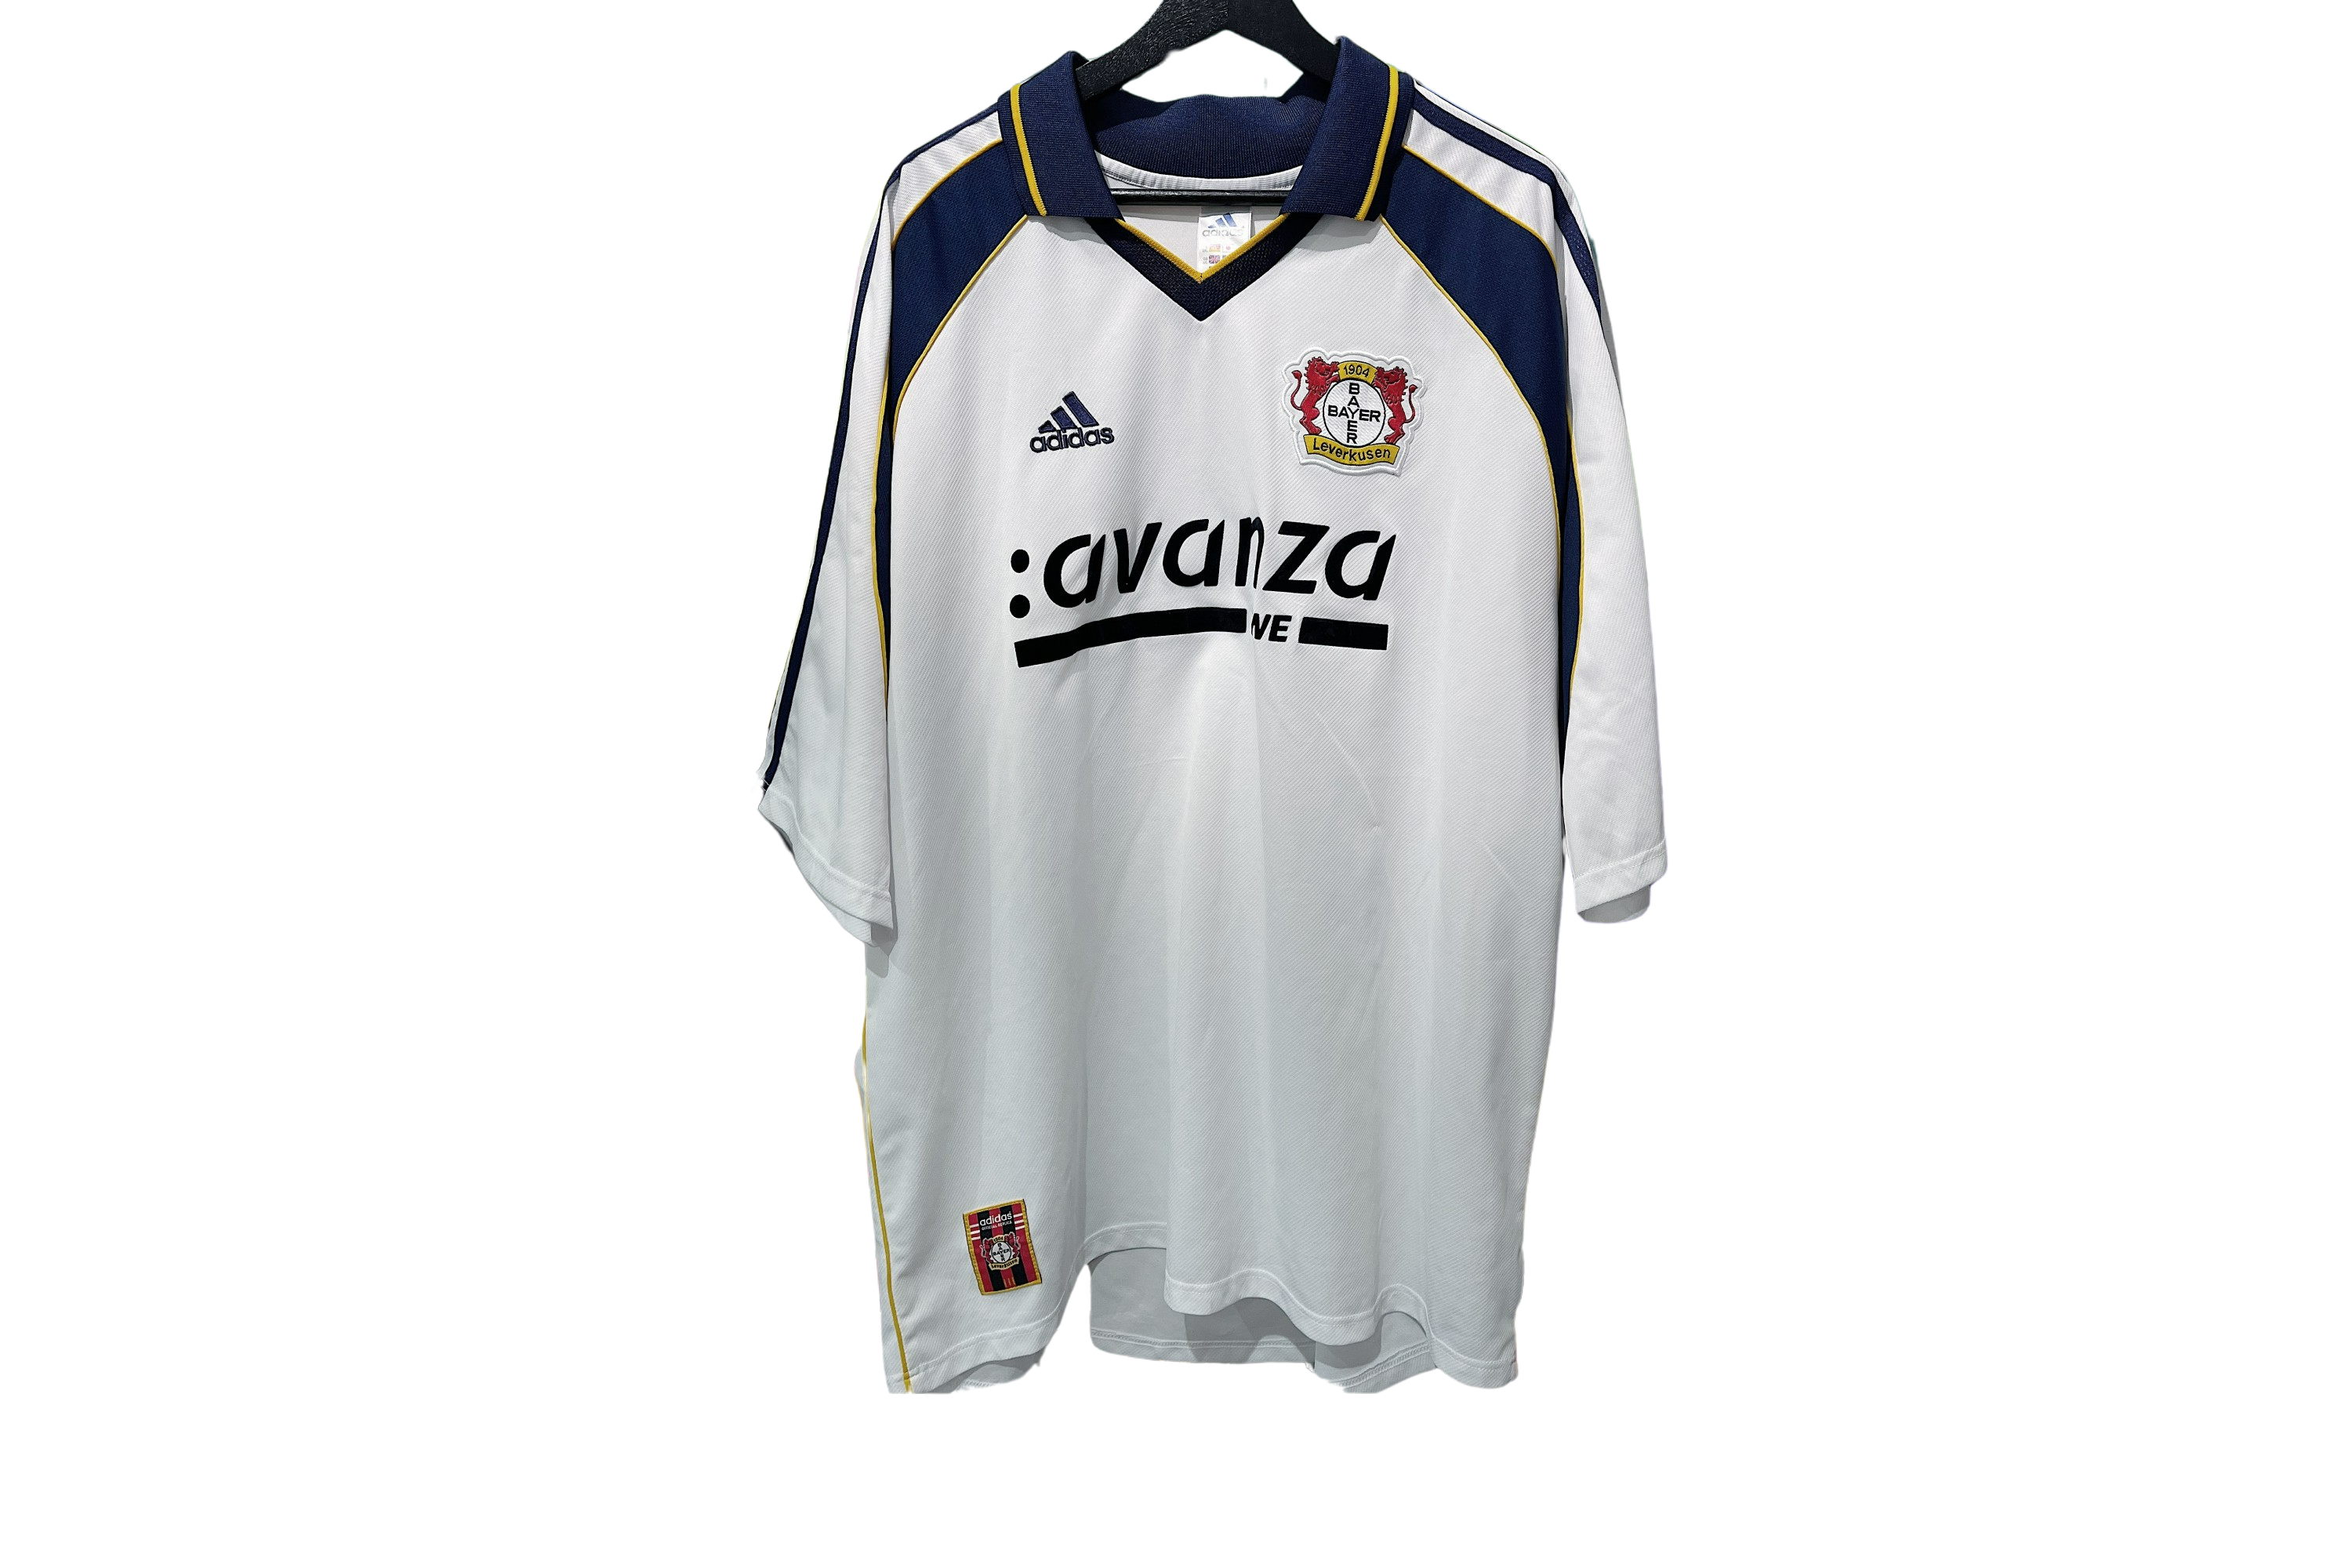 Adidas - Bayer Leverkusen 2000/01 Away Football Shirt